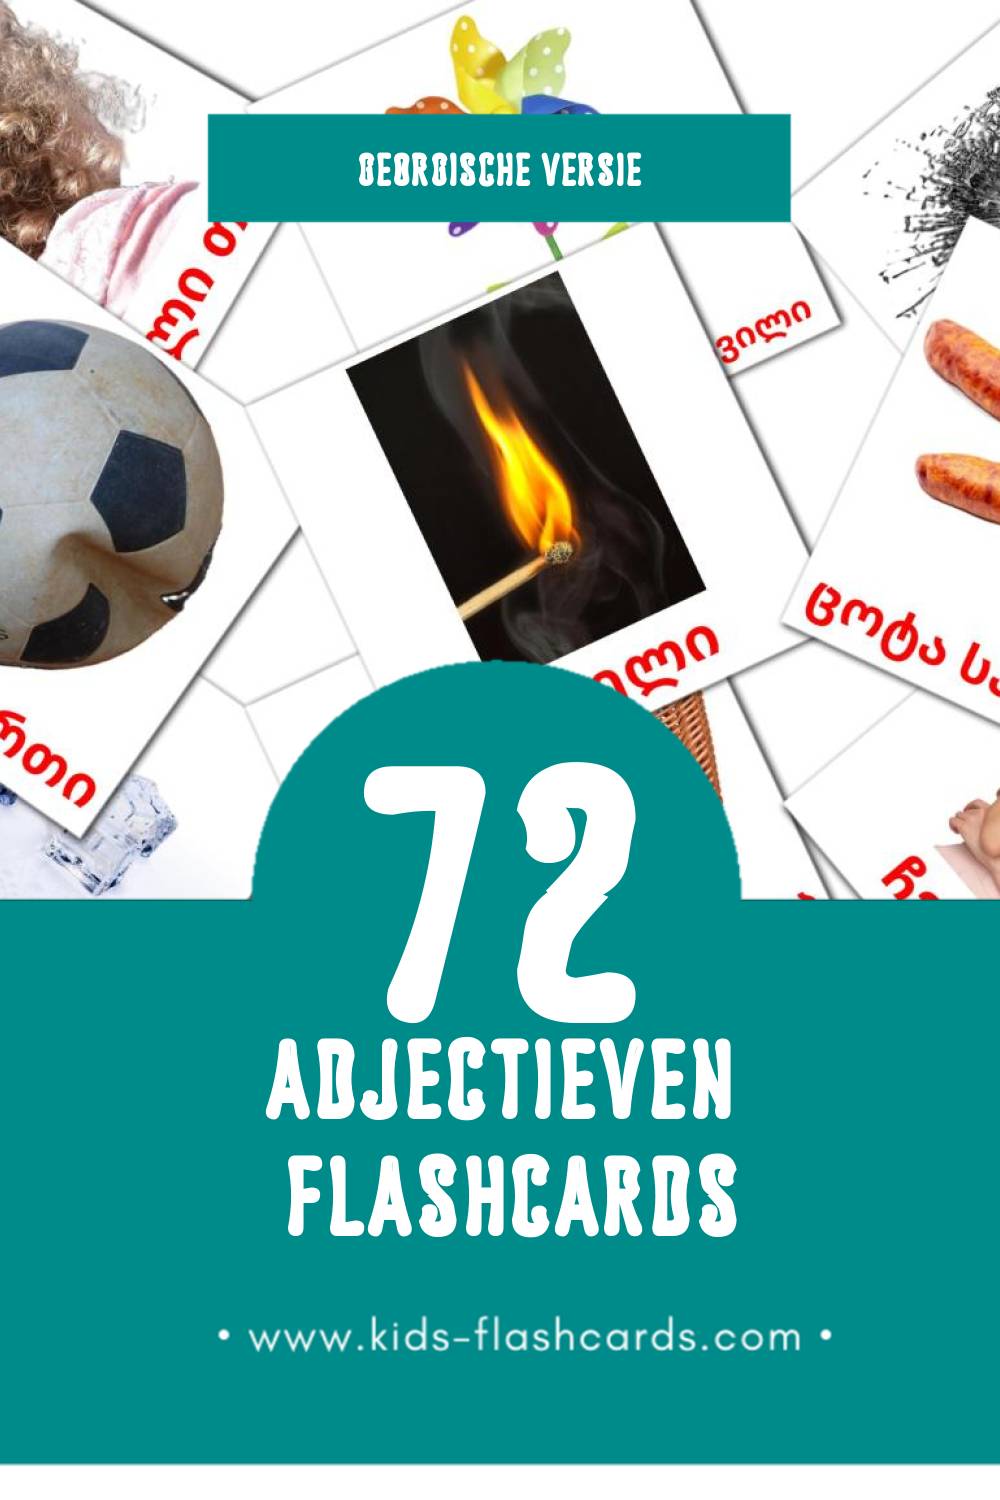 Visuele საწინააღმდეგო ზმნები Flashcards voor Kleuters (72 kaarten in het Georgisch)